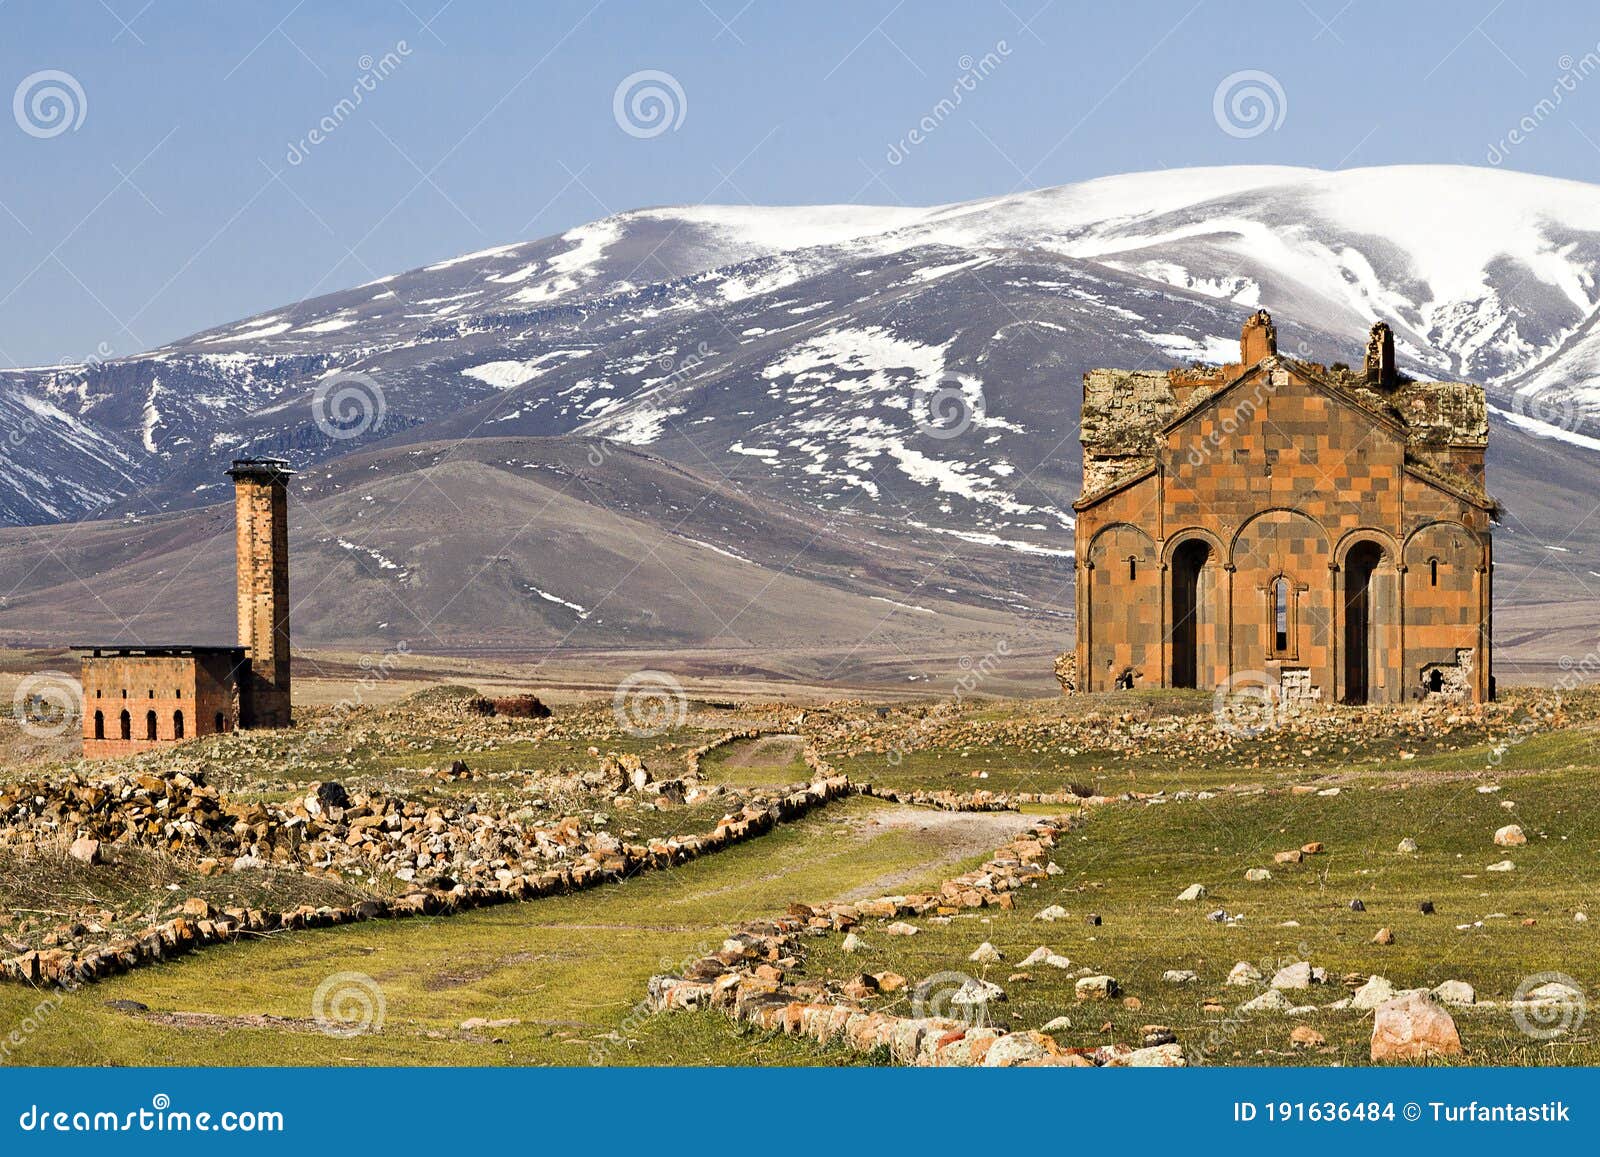 Карс бай. Город Ани Великая Армения. Ани столица Армении. Древний город Ани Армении.